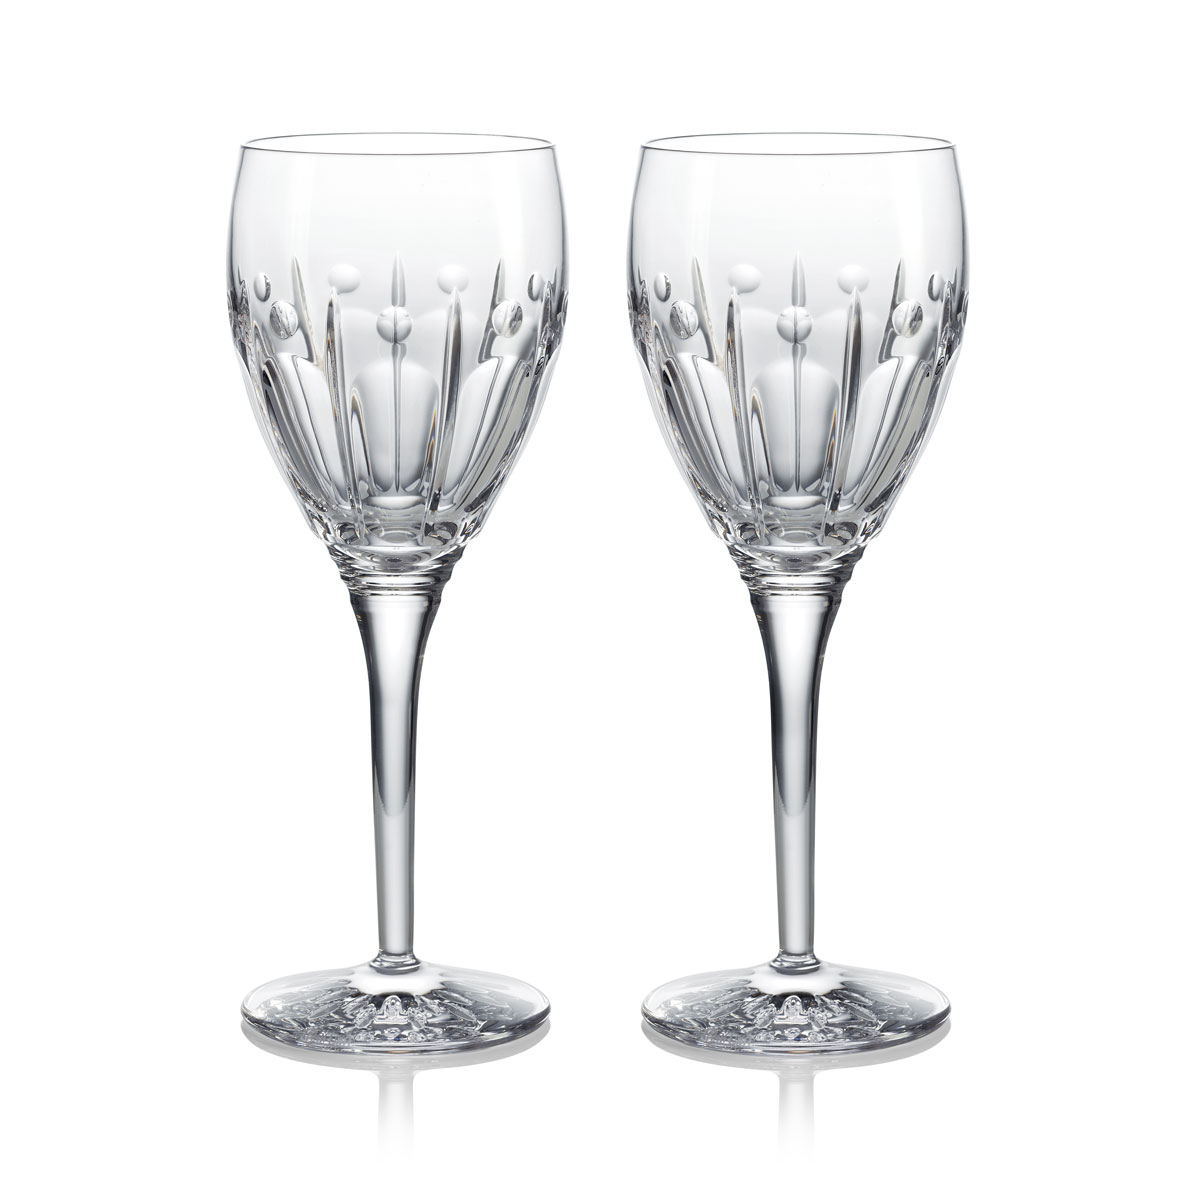 Waterford Crystal Winter Wonders, Winter Rose Wine Glasses Clear Pair